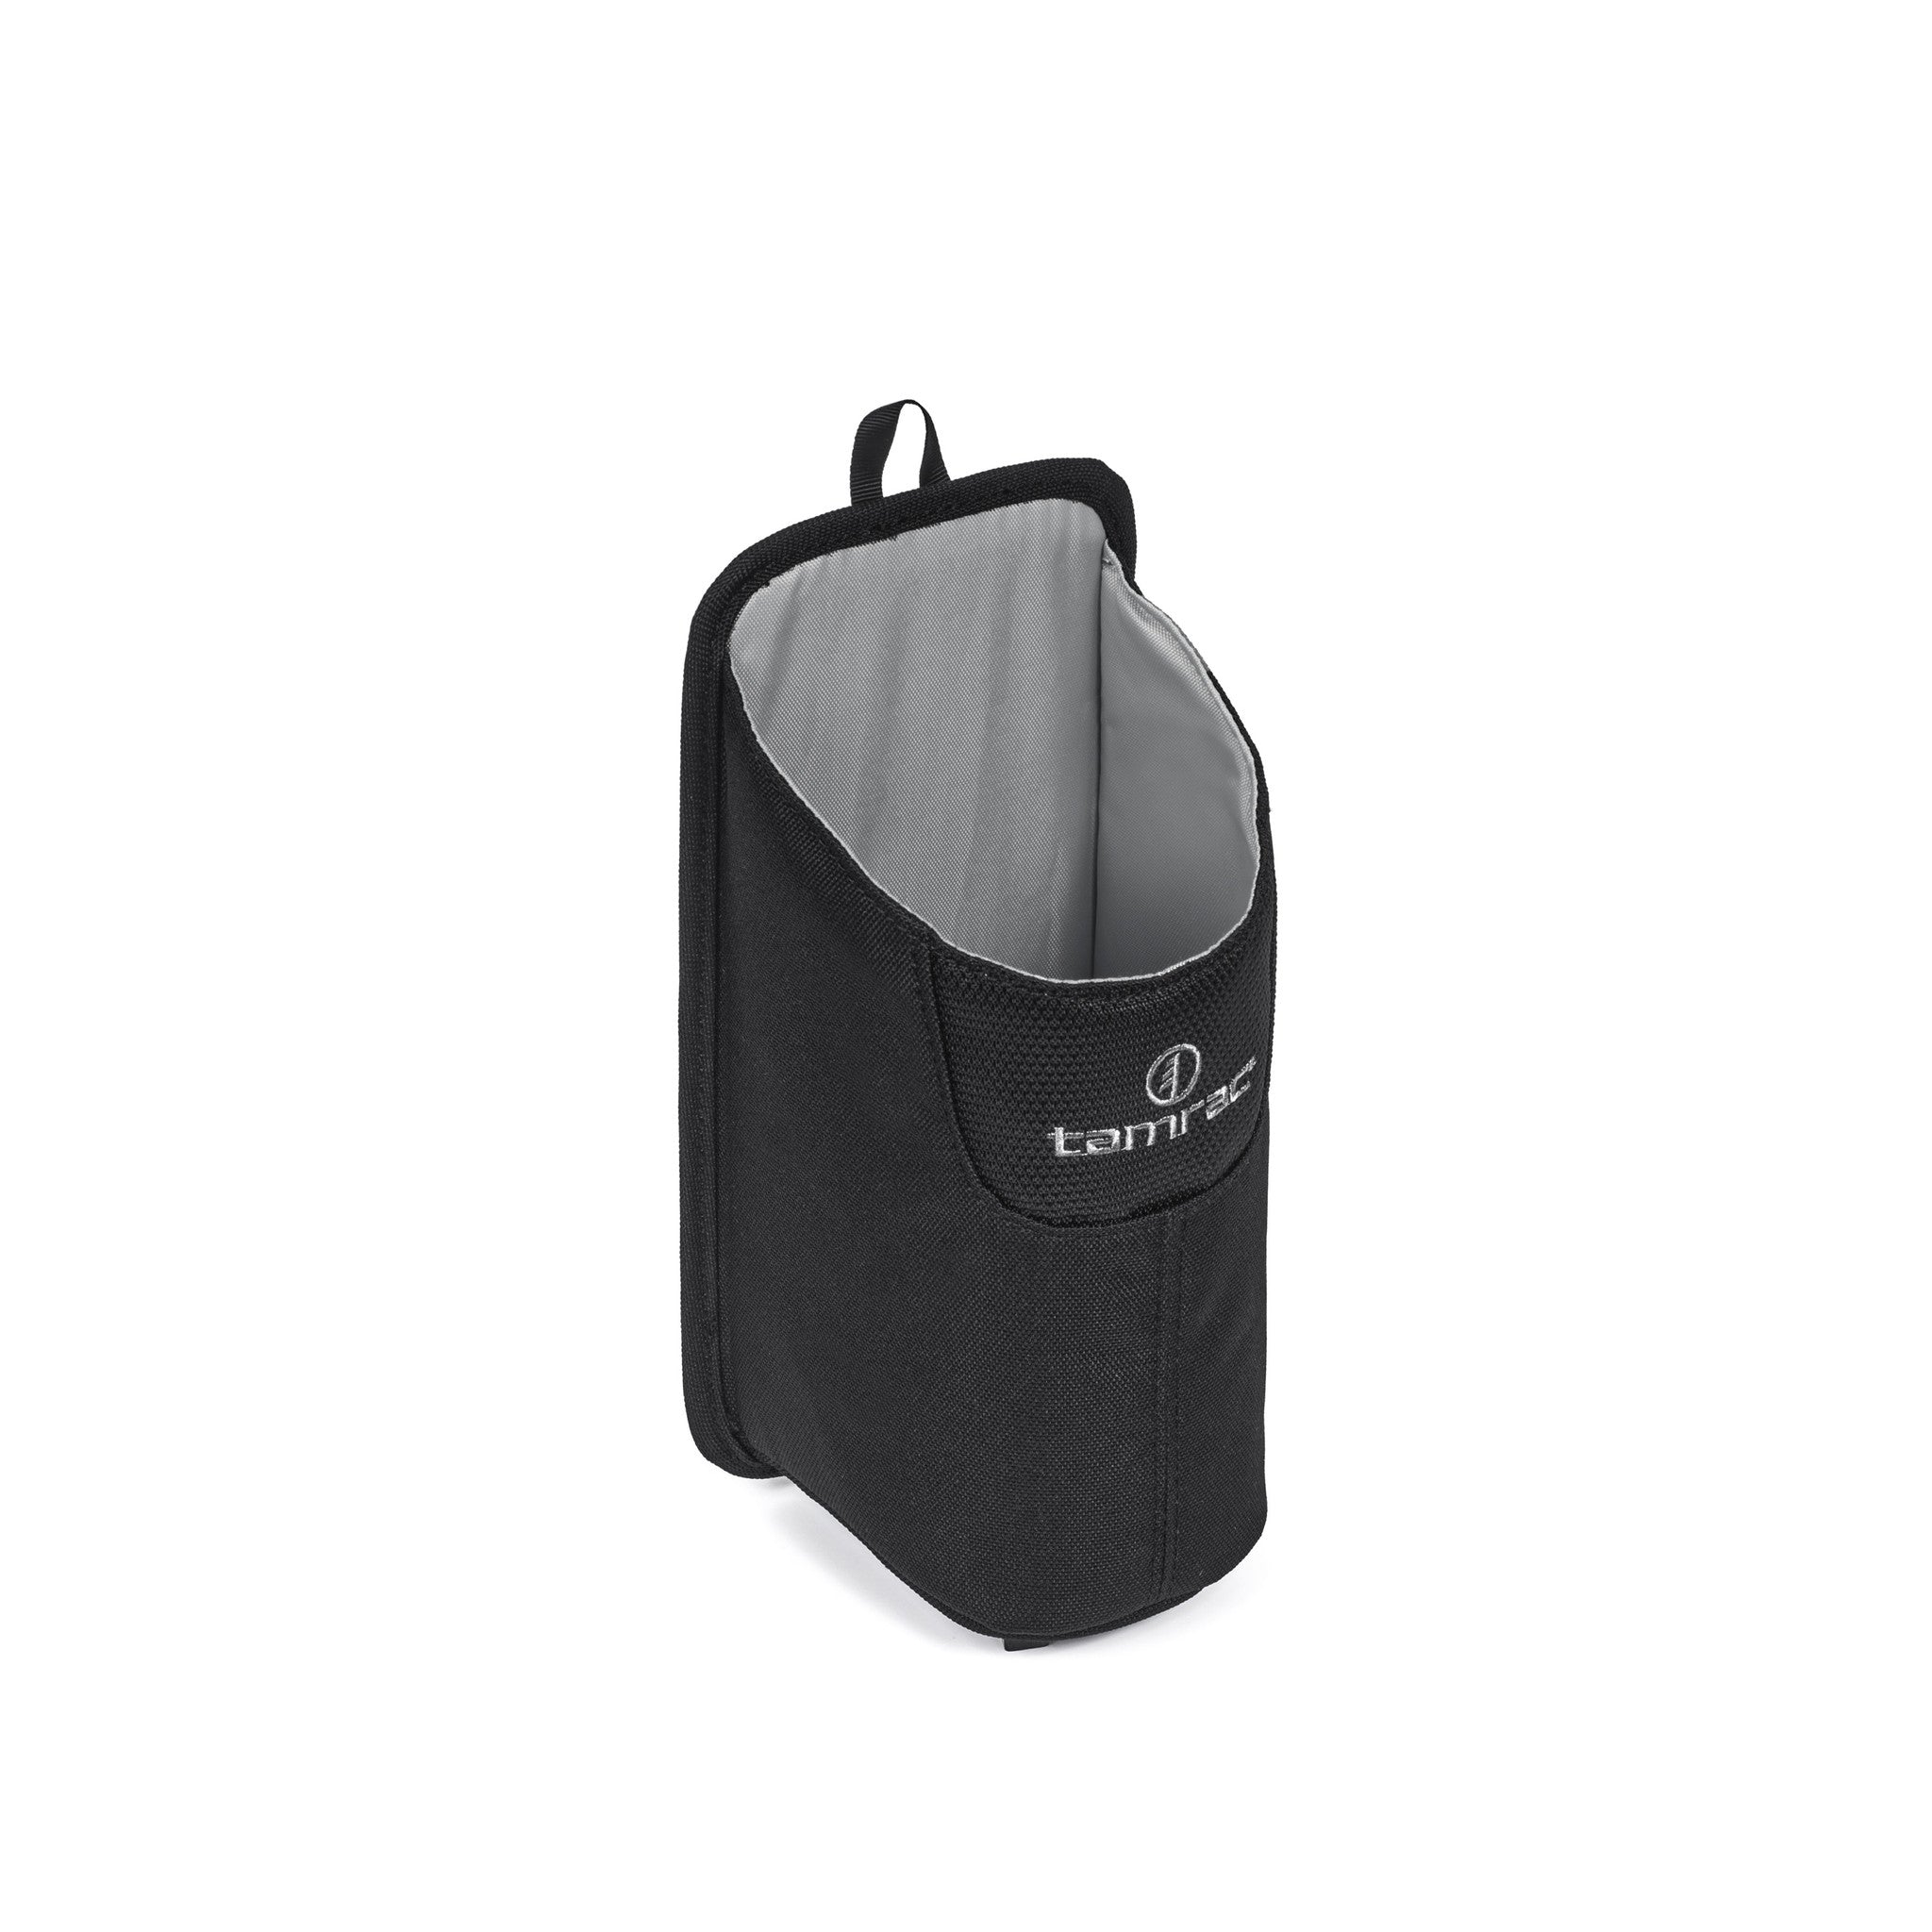 water bottle holder for backpack strap